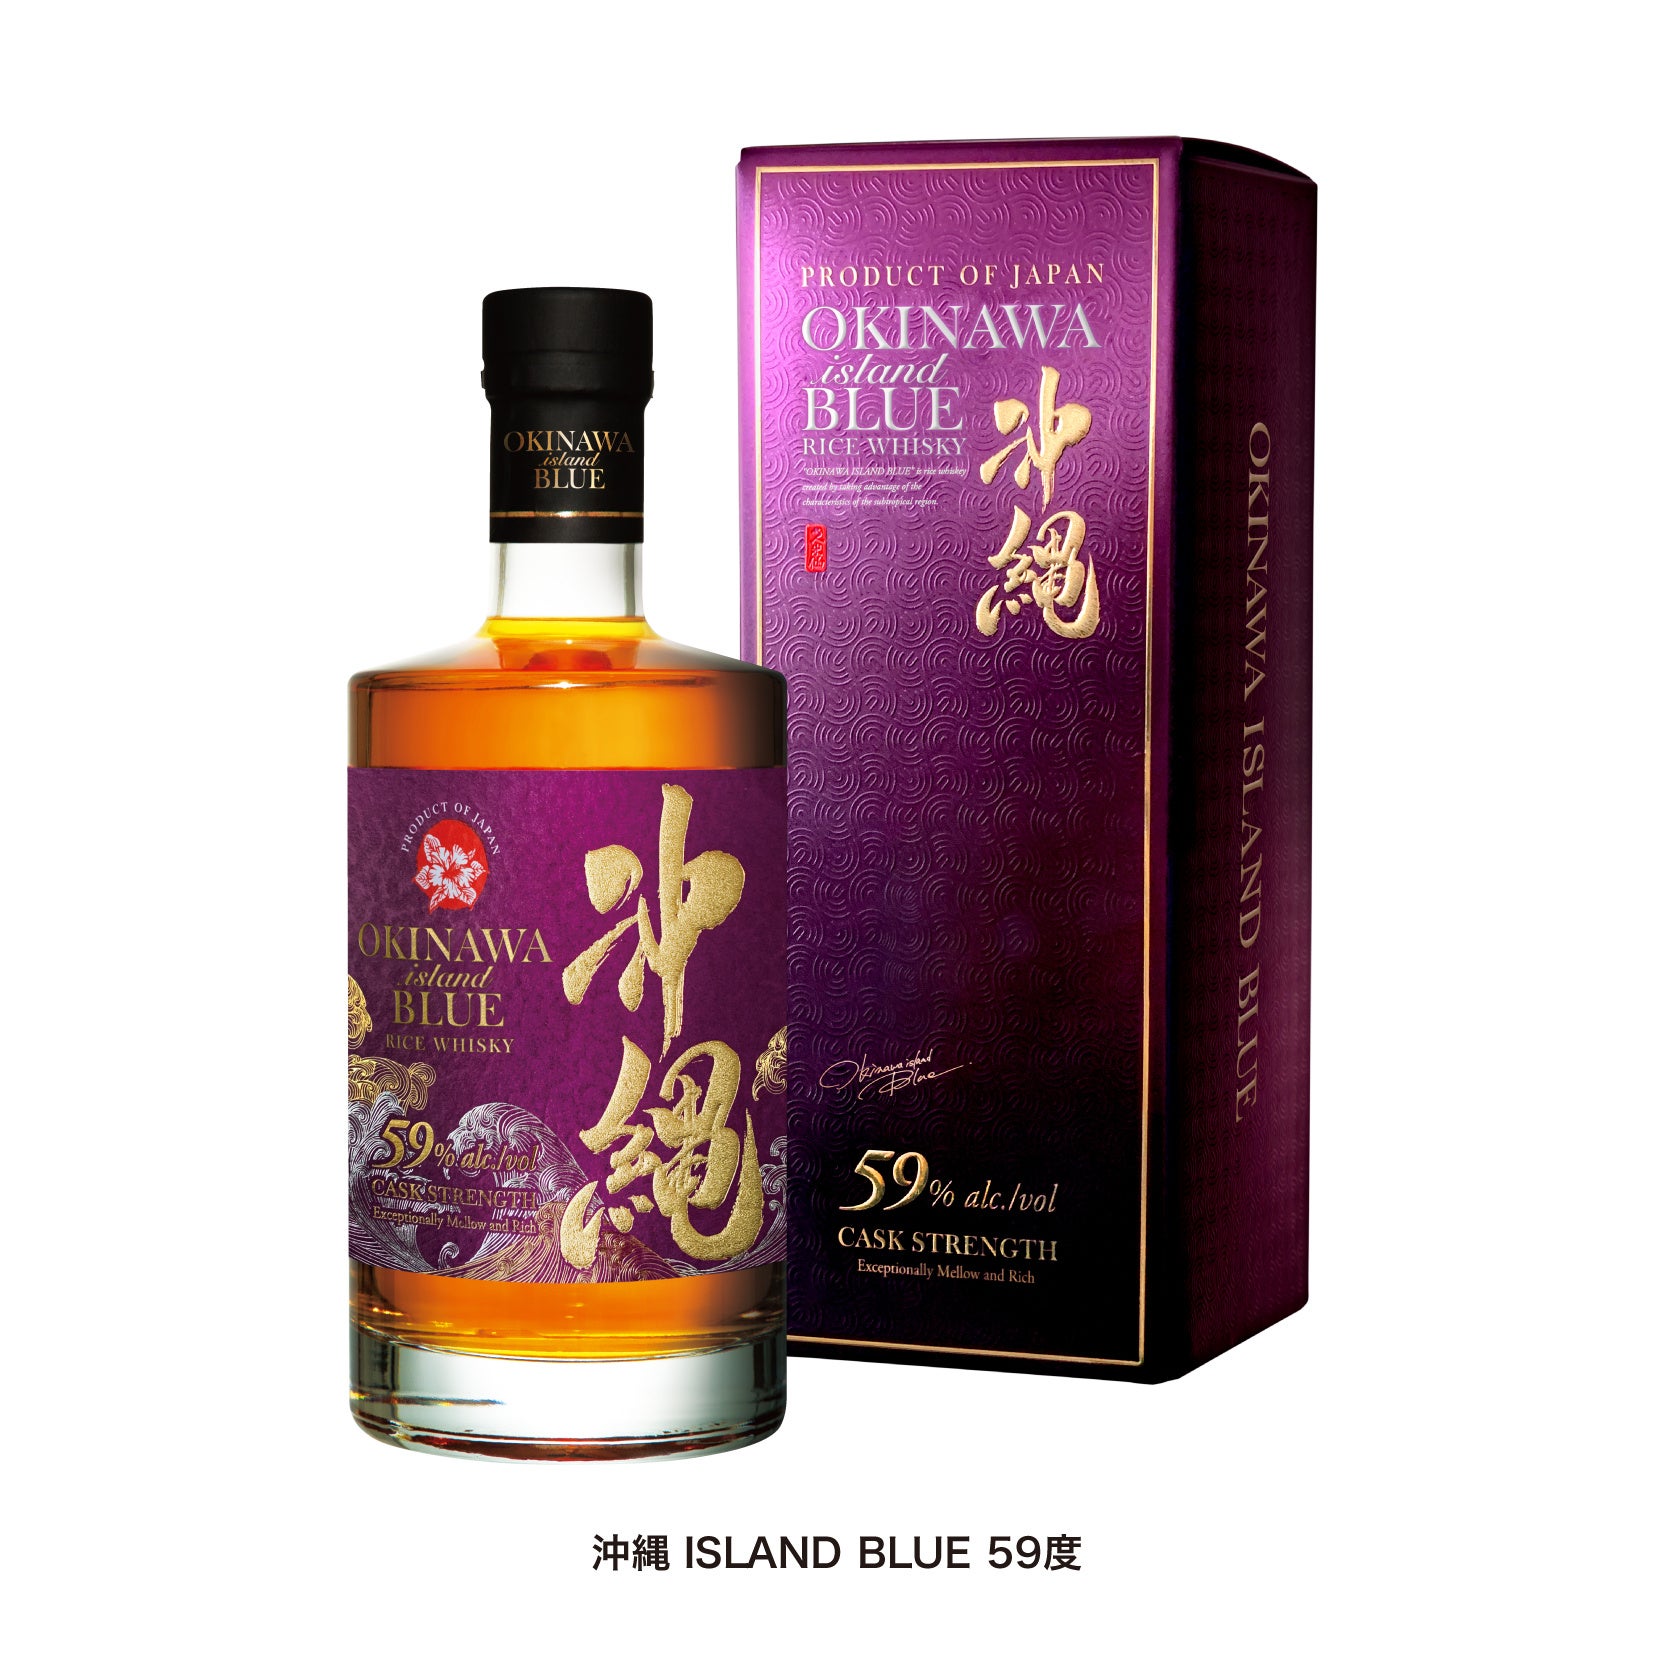 世界3大酒類品評会 で「沖縄 ISLAND BLUE」が2年連続金賞受賞！！